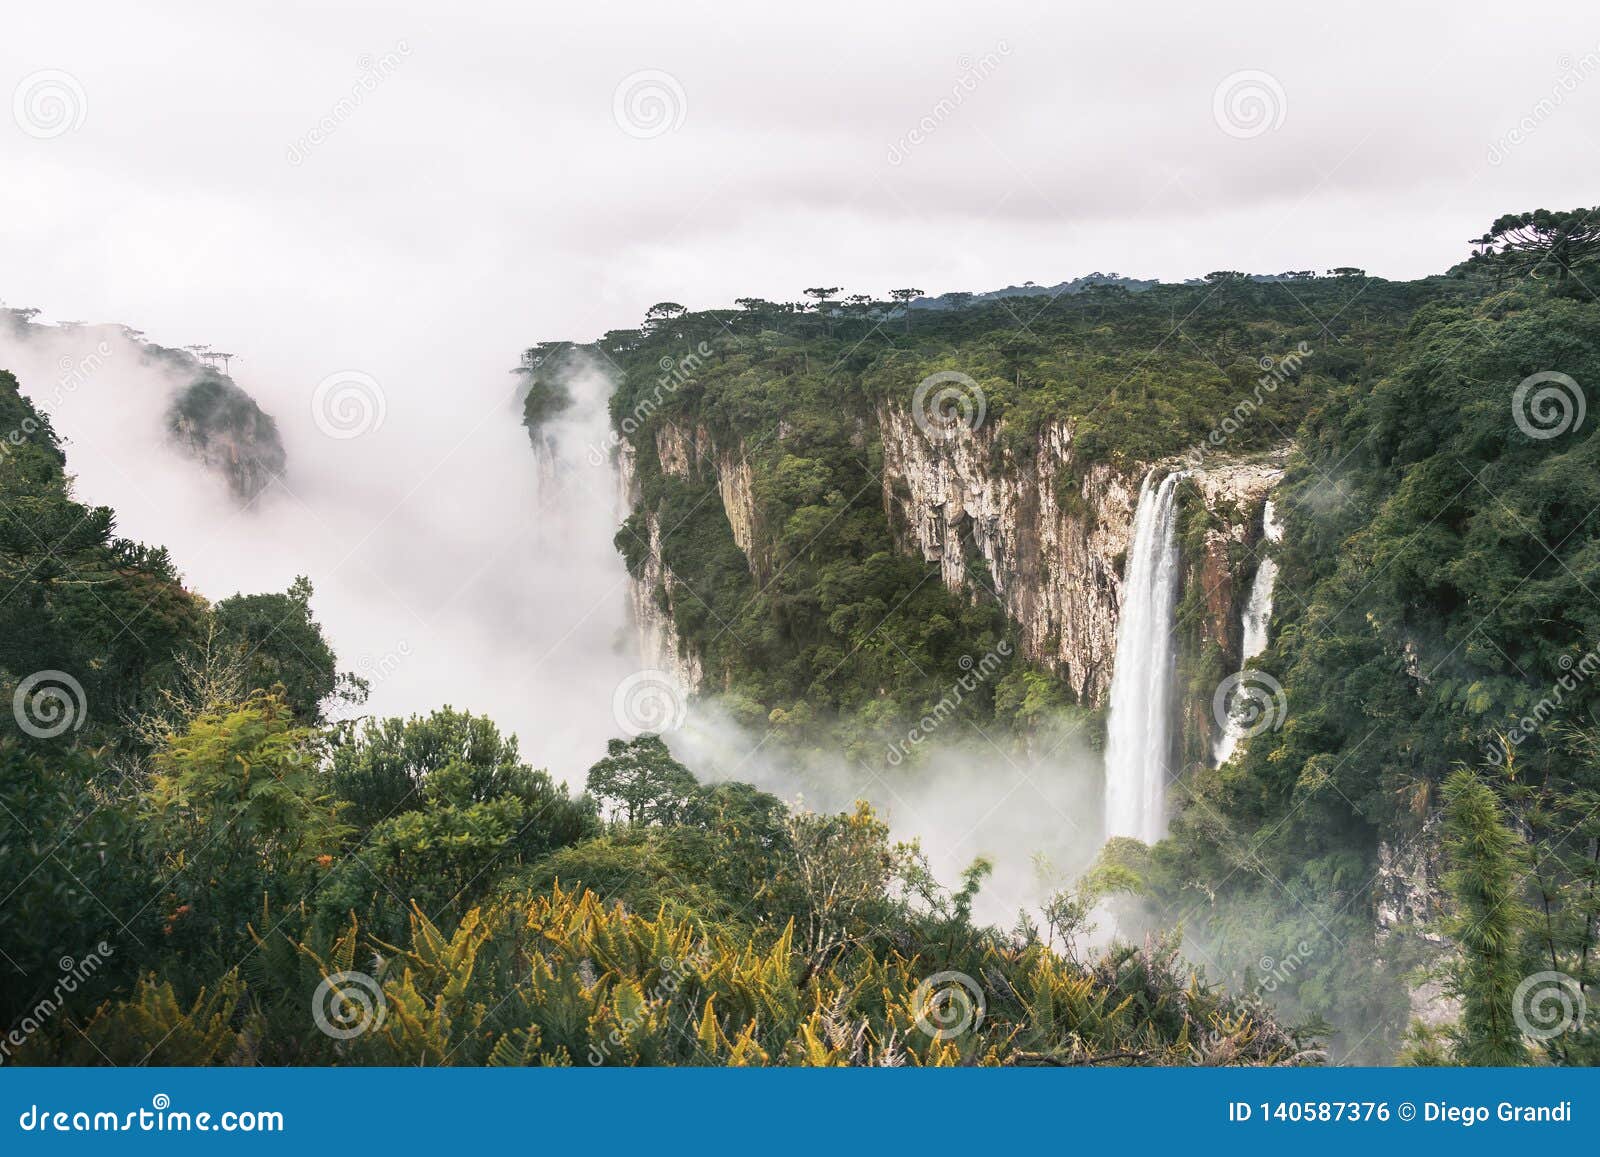 waterfall of itaimbezinho canyon with fog at aparados da serra national park - cambara do sul, rio grande do sul, brazil